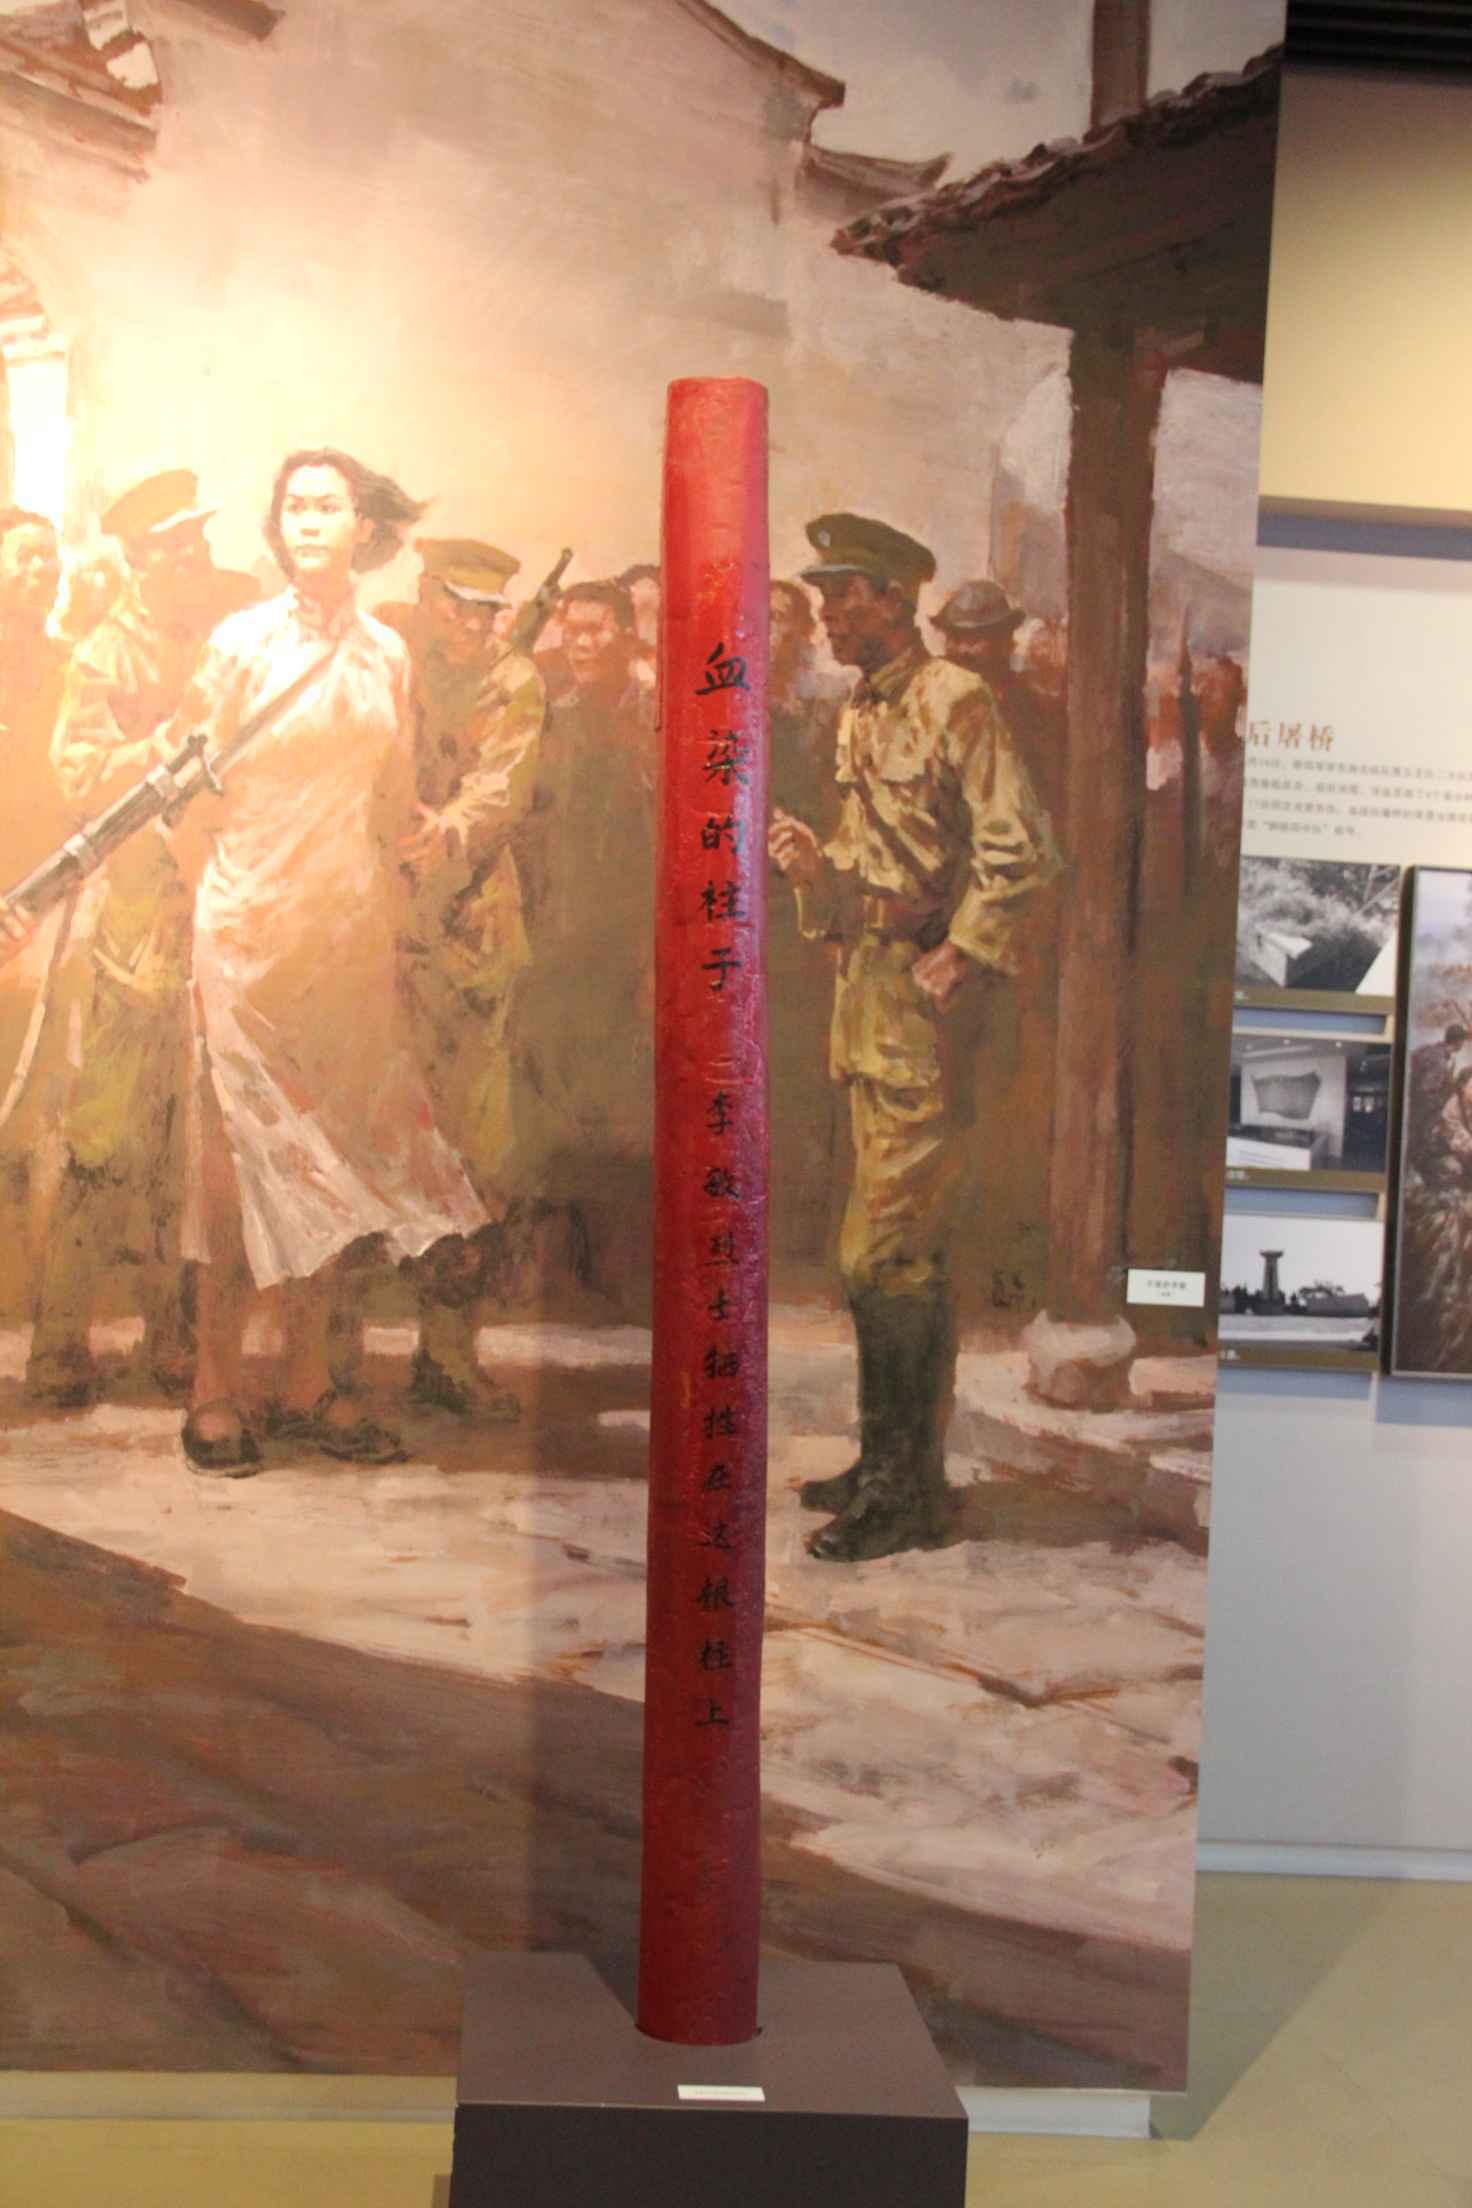 这是抗日战争时期,革命烈士李敏就义时被绑的柱子,柱子高280